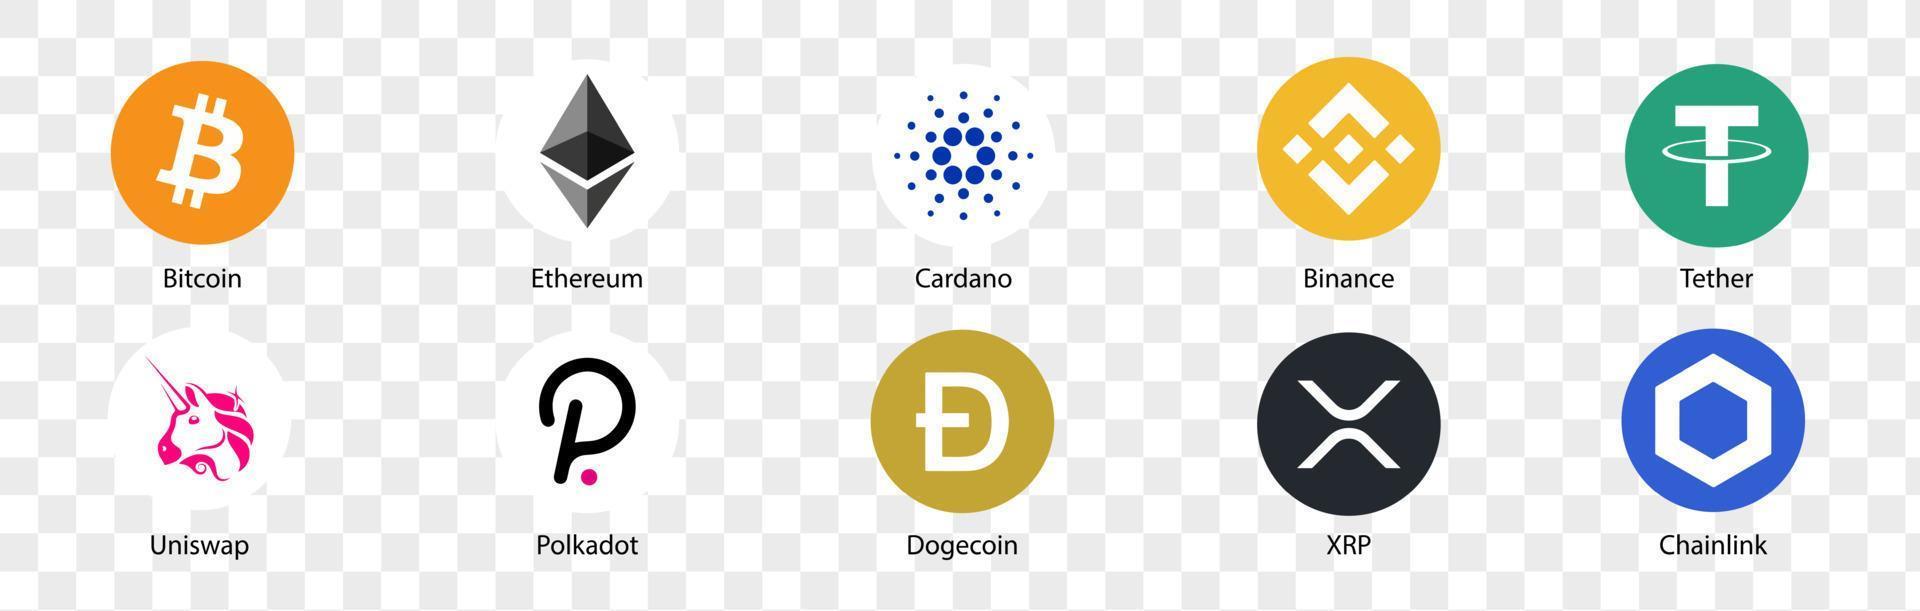 cryptocurrency-logo instellen. set van cryptocurrency-pictogrammen. bitcoin, ethereum, cardano, binance, tether, uniswap, polkadot, dogecoin, xrp, chainlink. vectorillustraties. vector